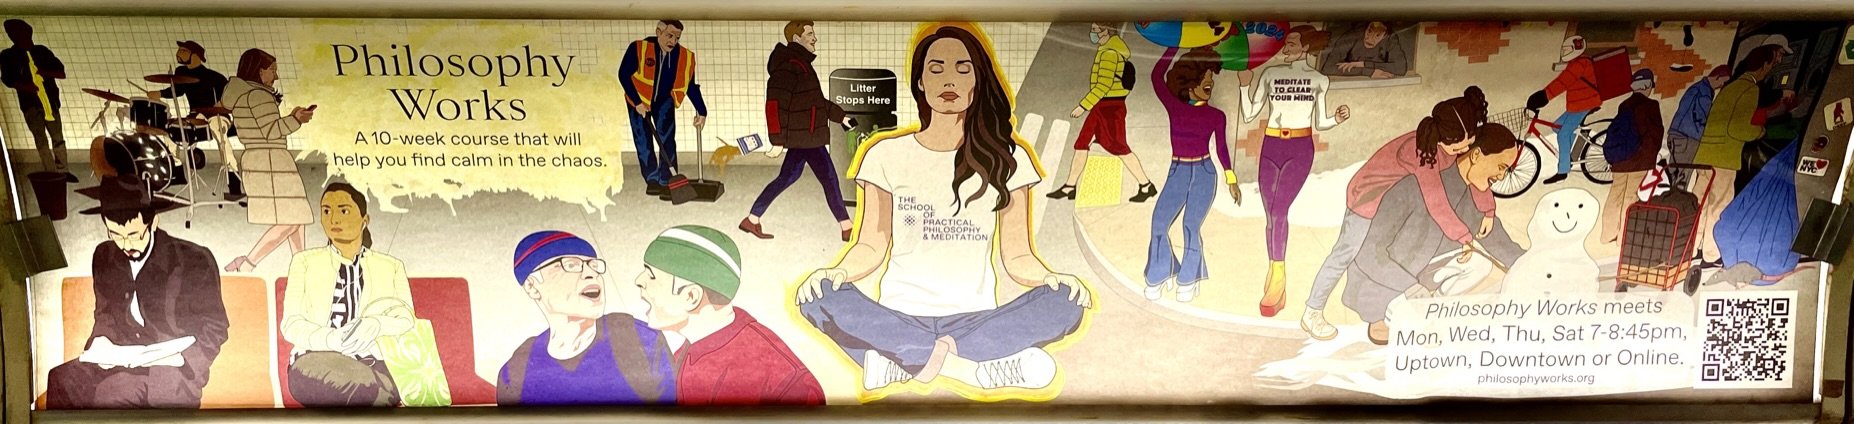 A modern subway car ad.